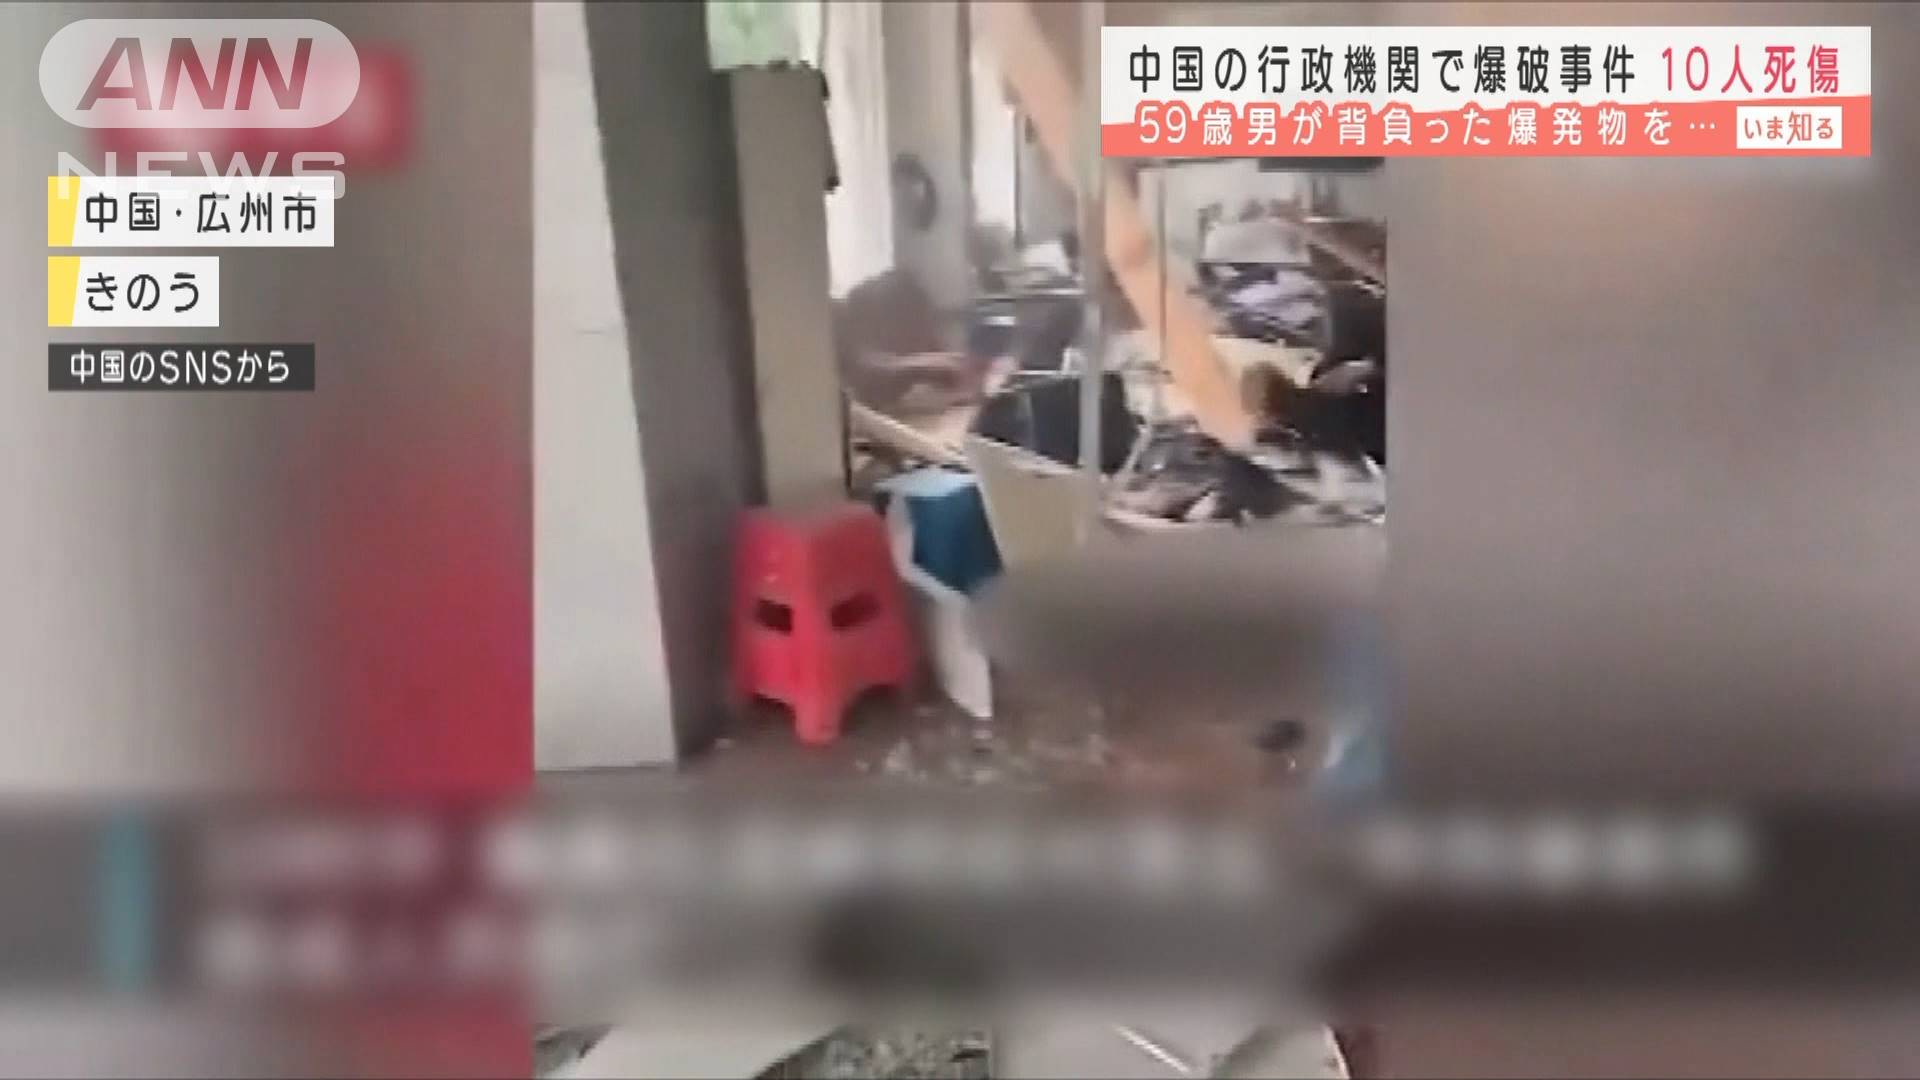 男が爆発物を 中国の行政機関で爆破事件 10人死傷 テレ朝news テレビ朝日のニュースサイト